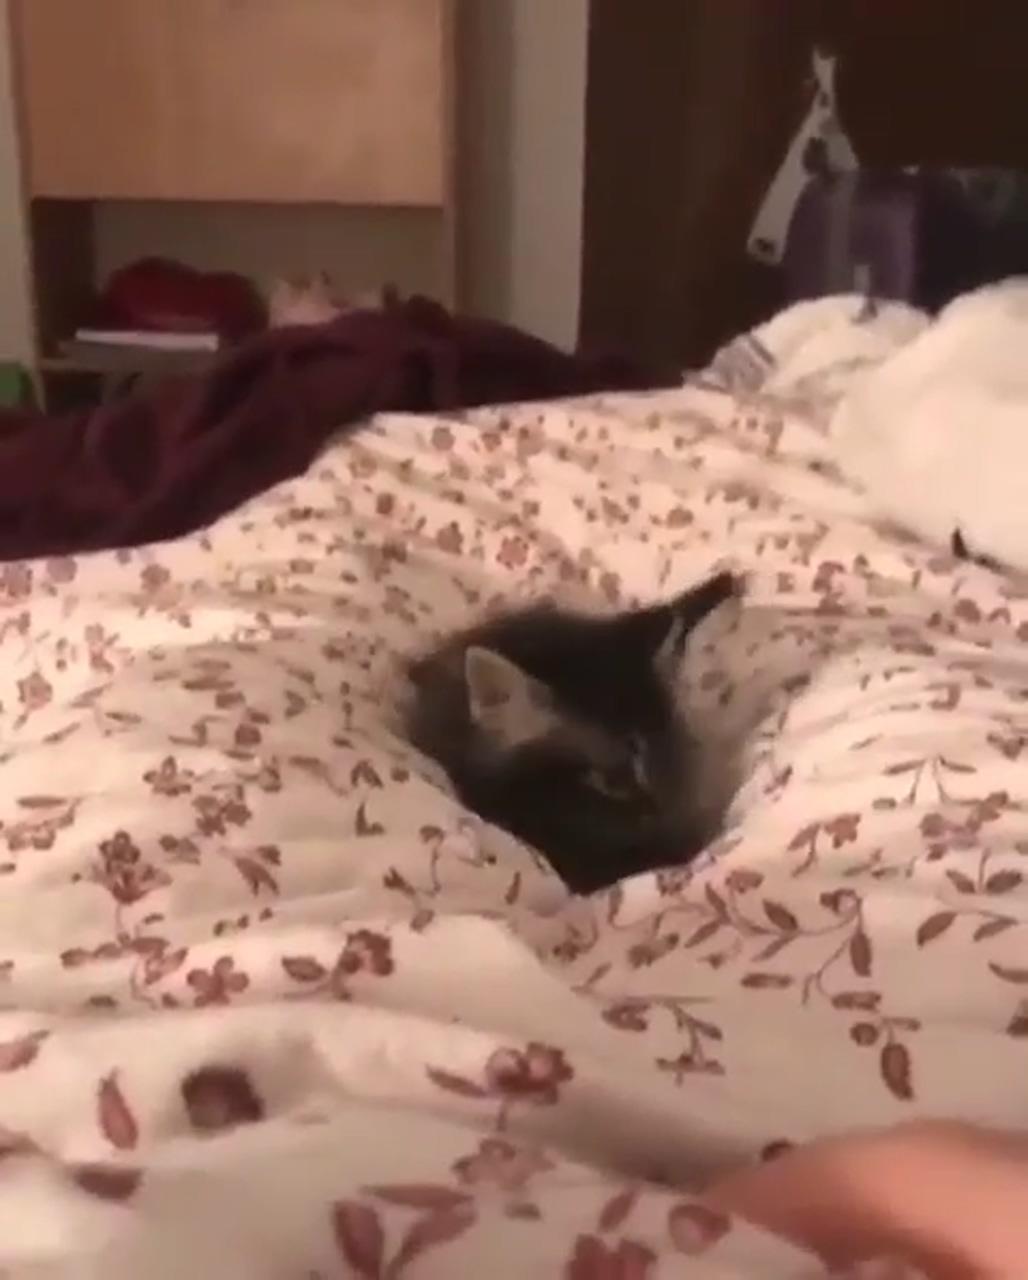 Cute kitten playing in bed; cute little kittens